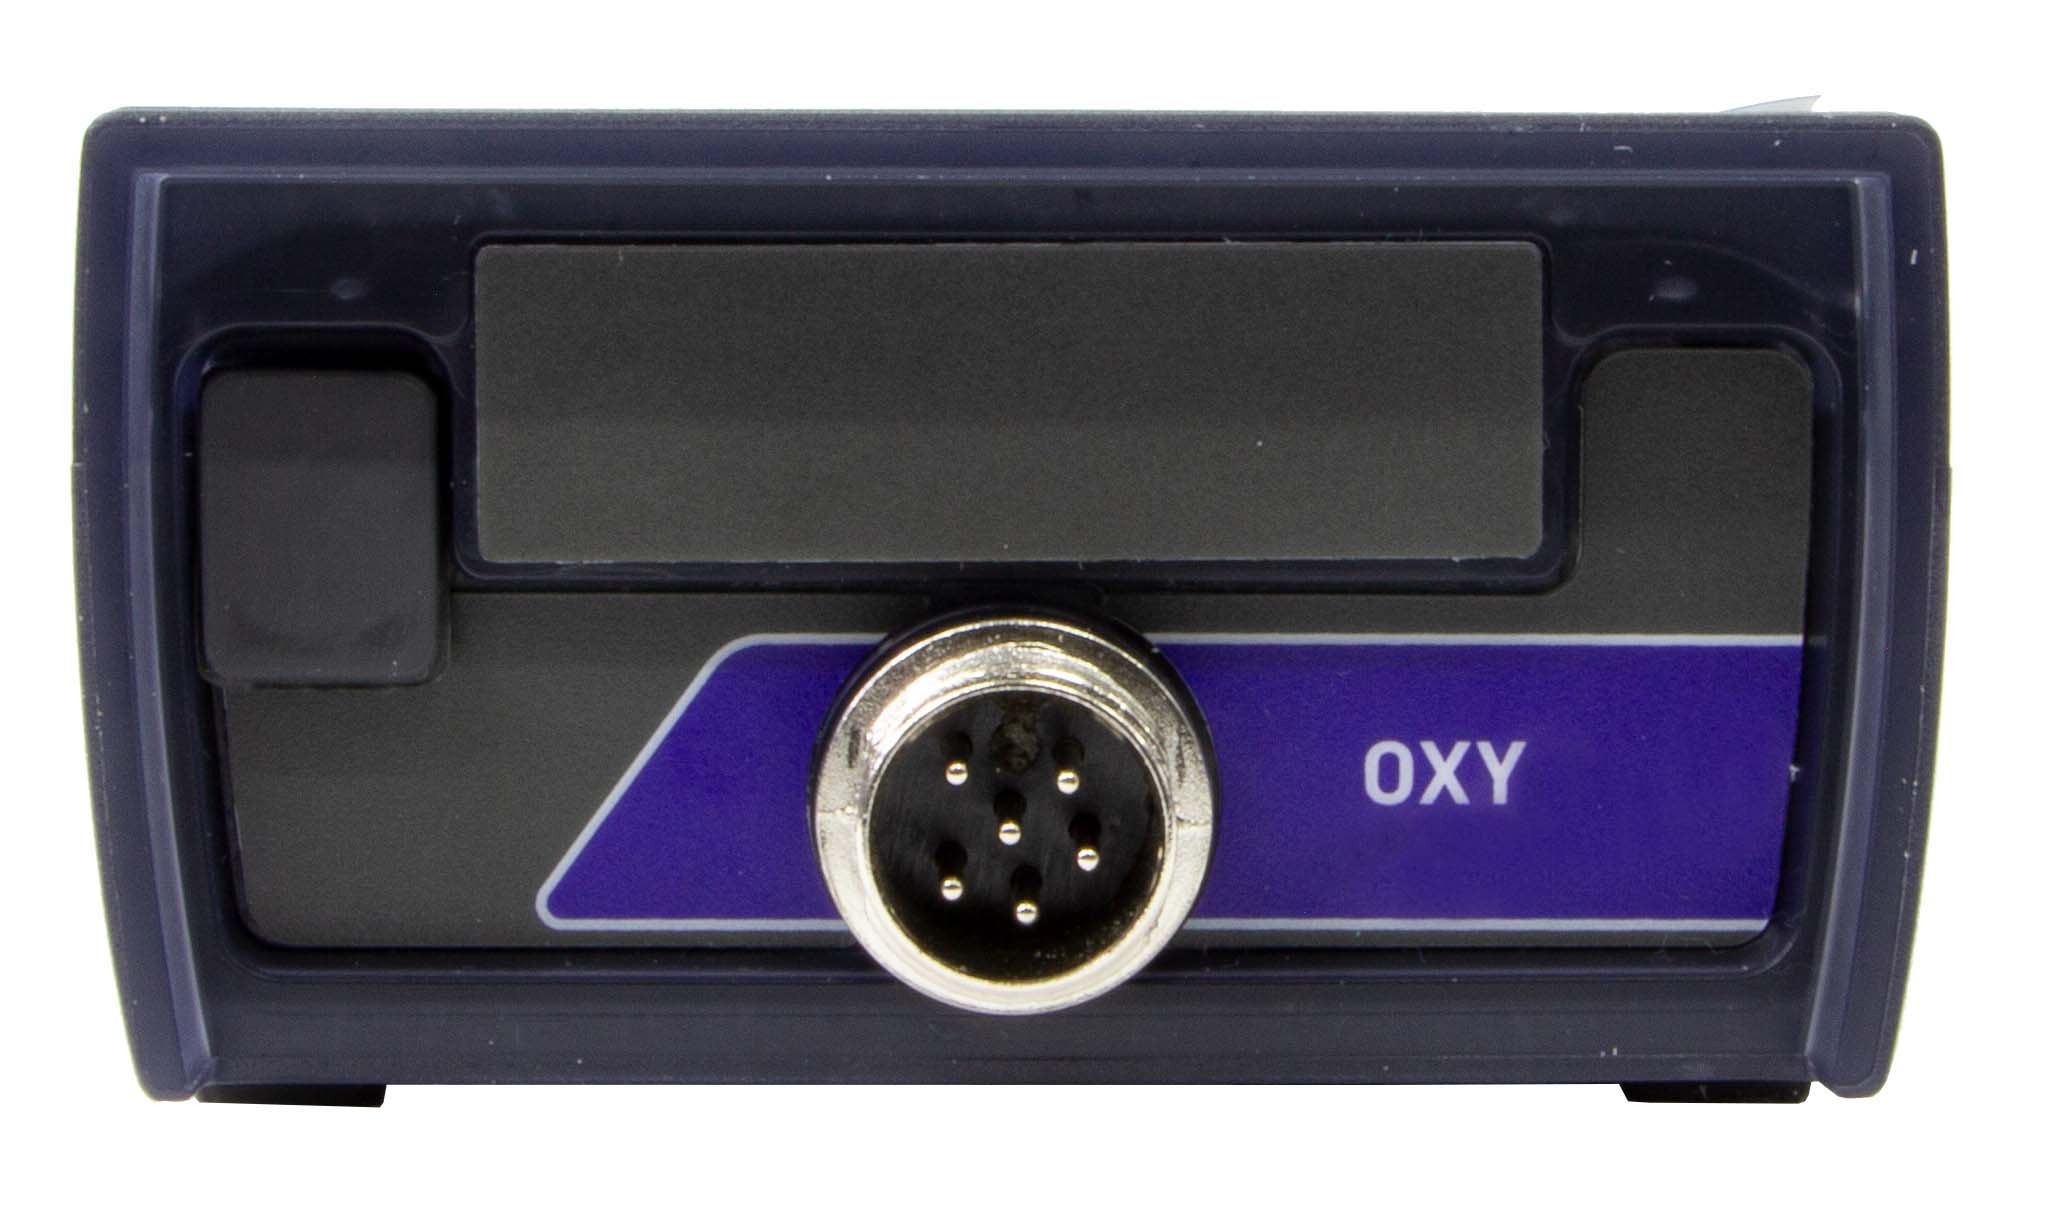 XS Oxy 70 gelöster Sauerstoff/O2 Sättigung/barometrischer Druck/Temperatur Messgerät im Koffer inklusive optischen OXY LDO70 Sauerstoffsensor